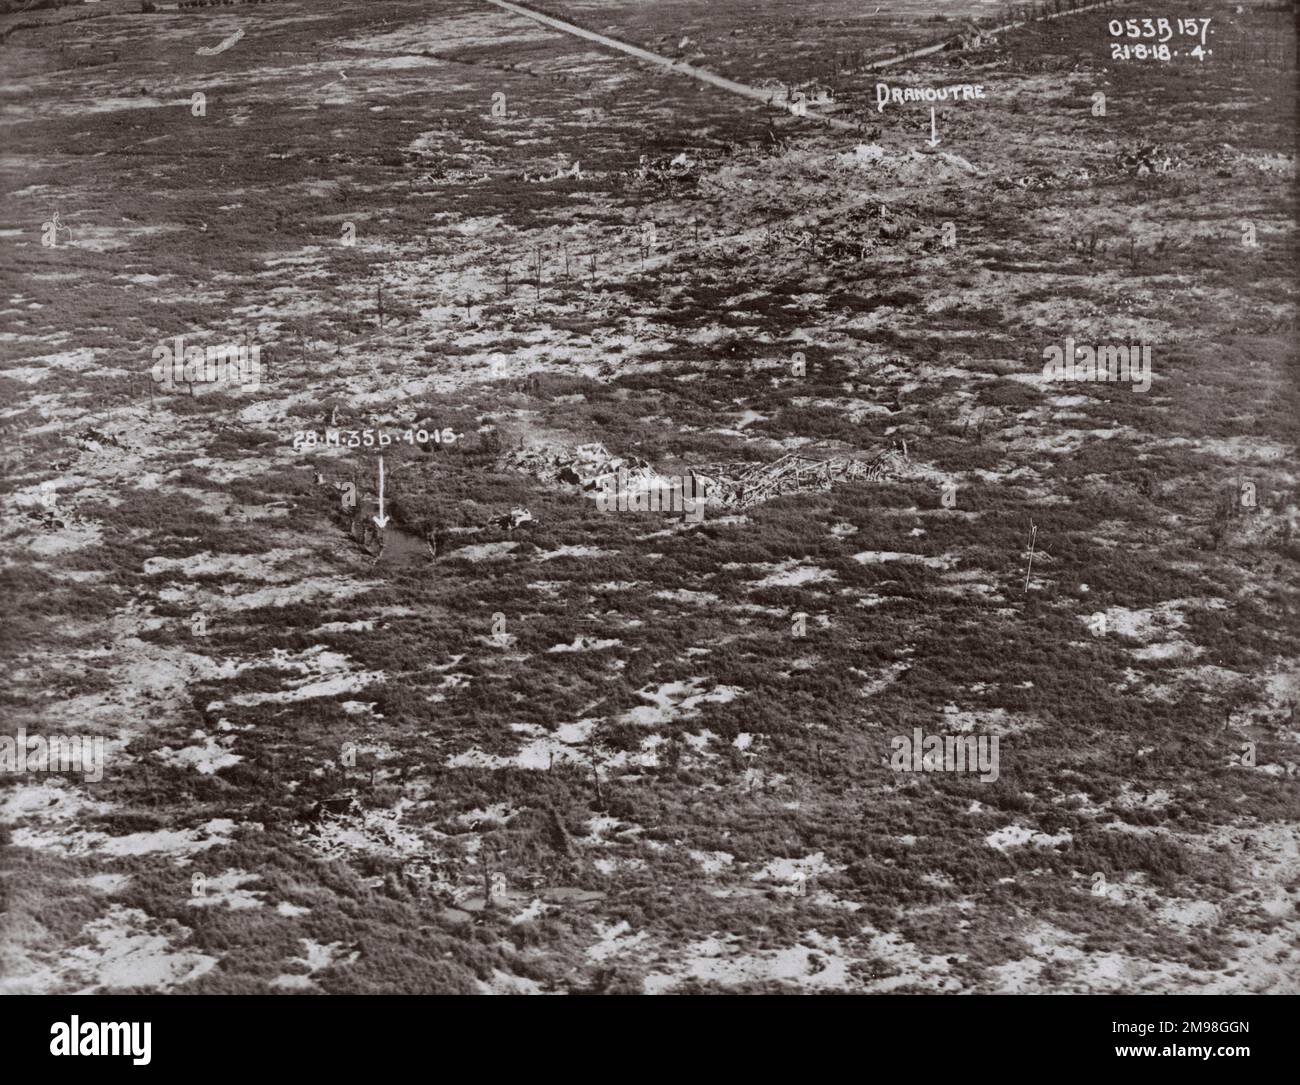 Luftaufnahme, ein Muschelgebiet in der Nähe von Dranoutre, Westflandern, Belgien, am 21. August 1918, mit Baumstümpfen sichtbar. Stockfoto